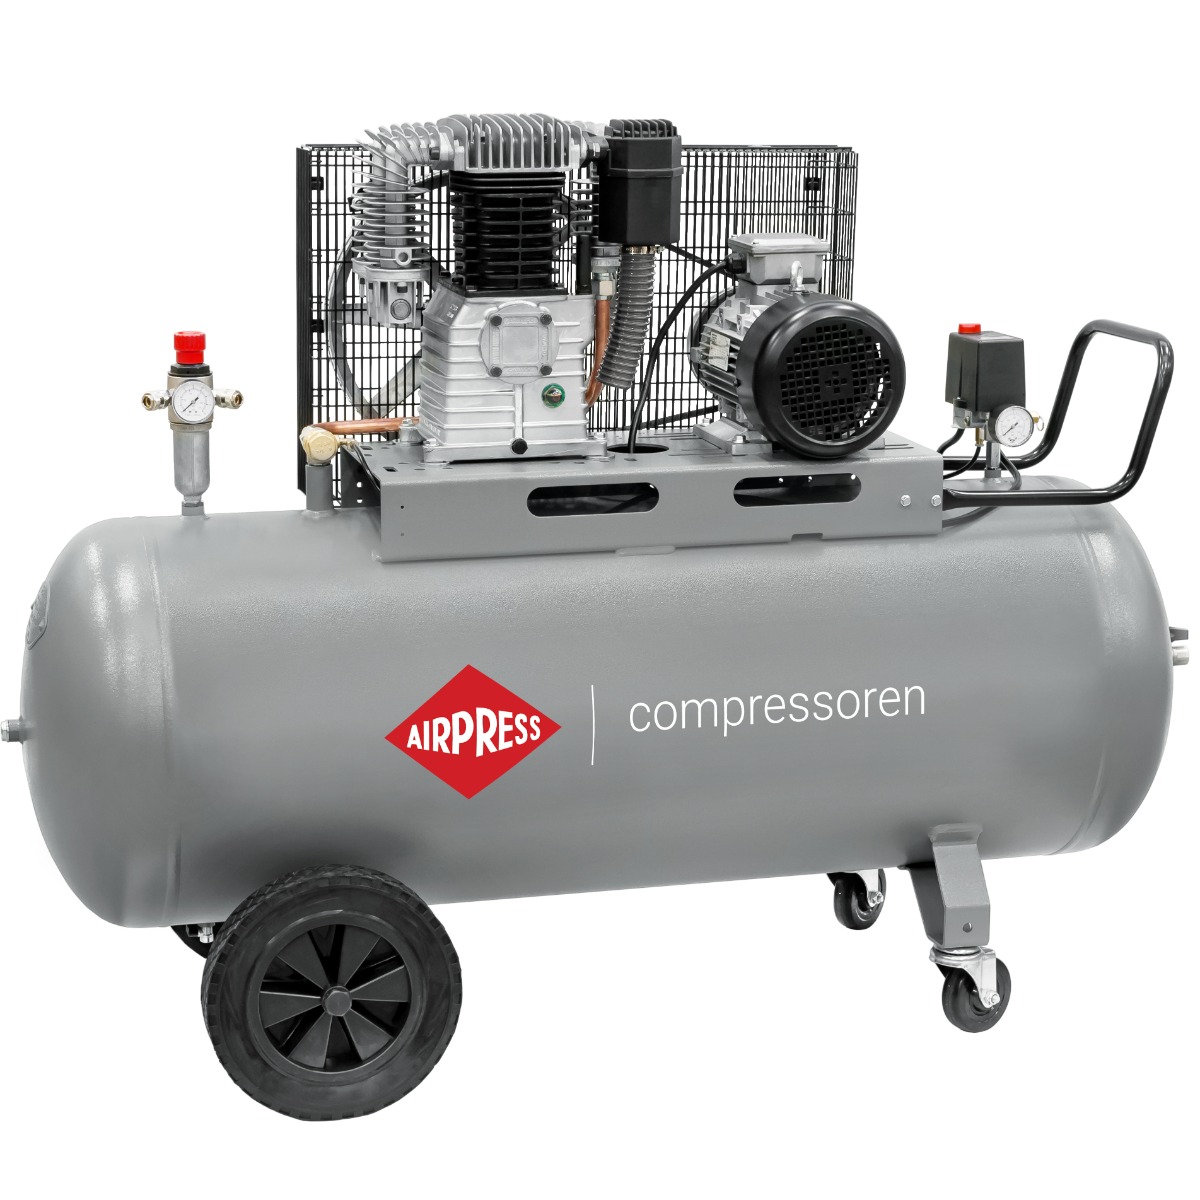 HK 650-270 Pro compressor